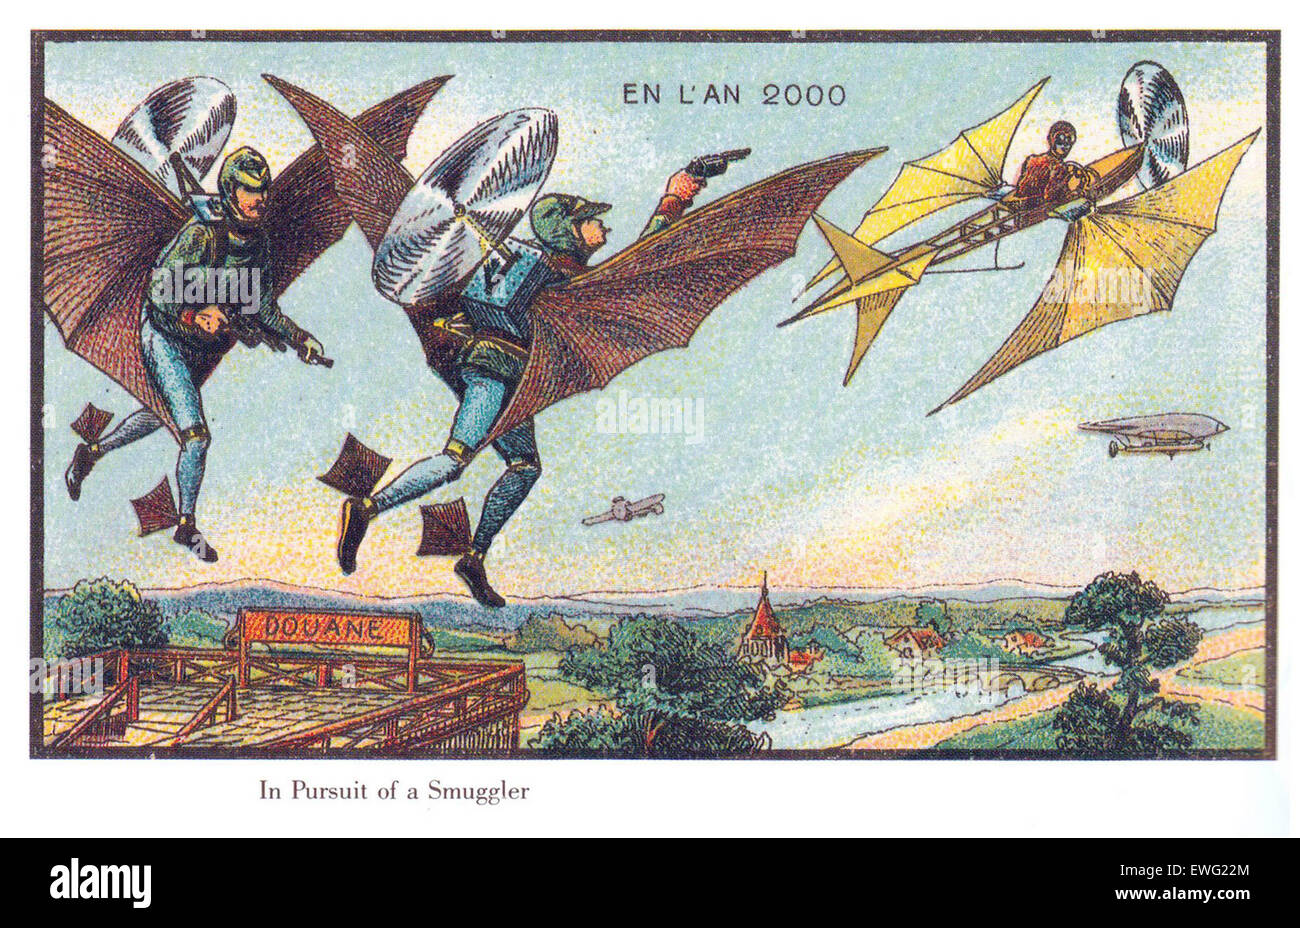 Illustrations de futuriste Vintage France au cours de l'année 2000 Banque D'Images